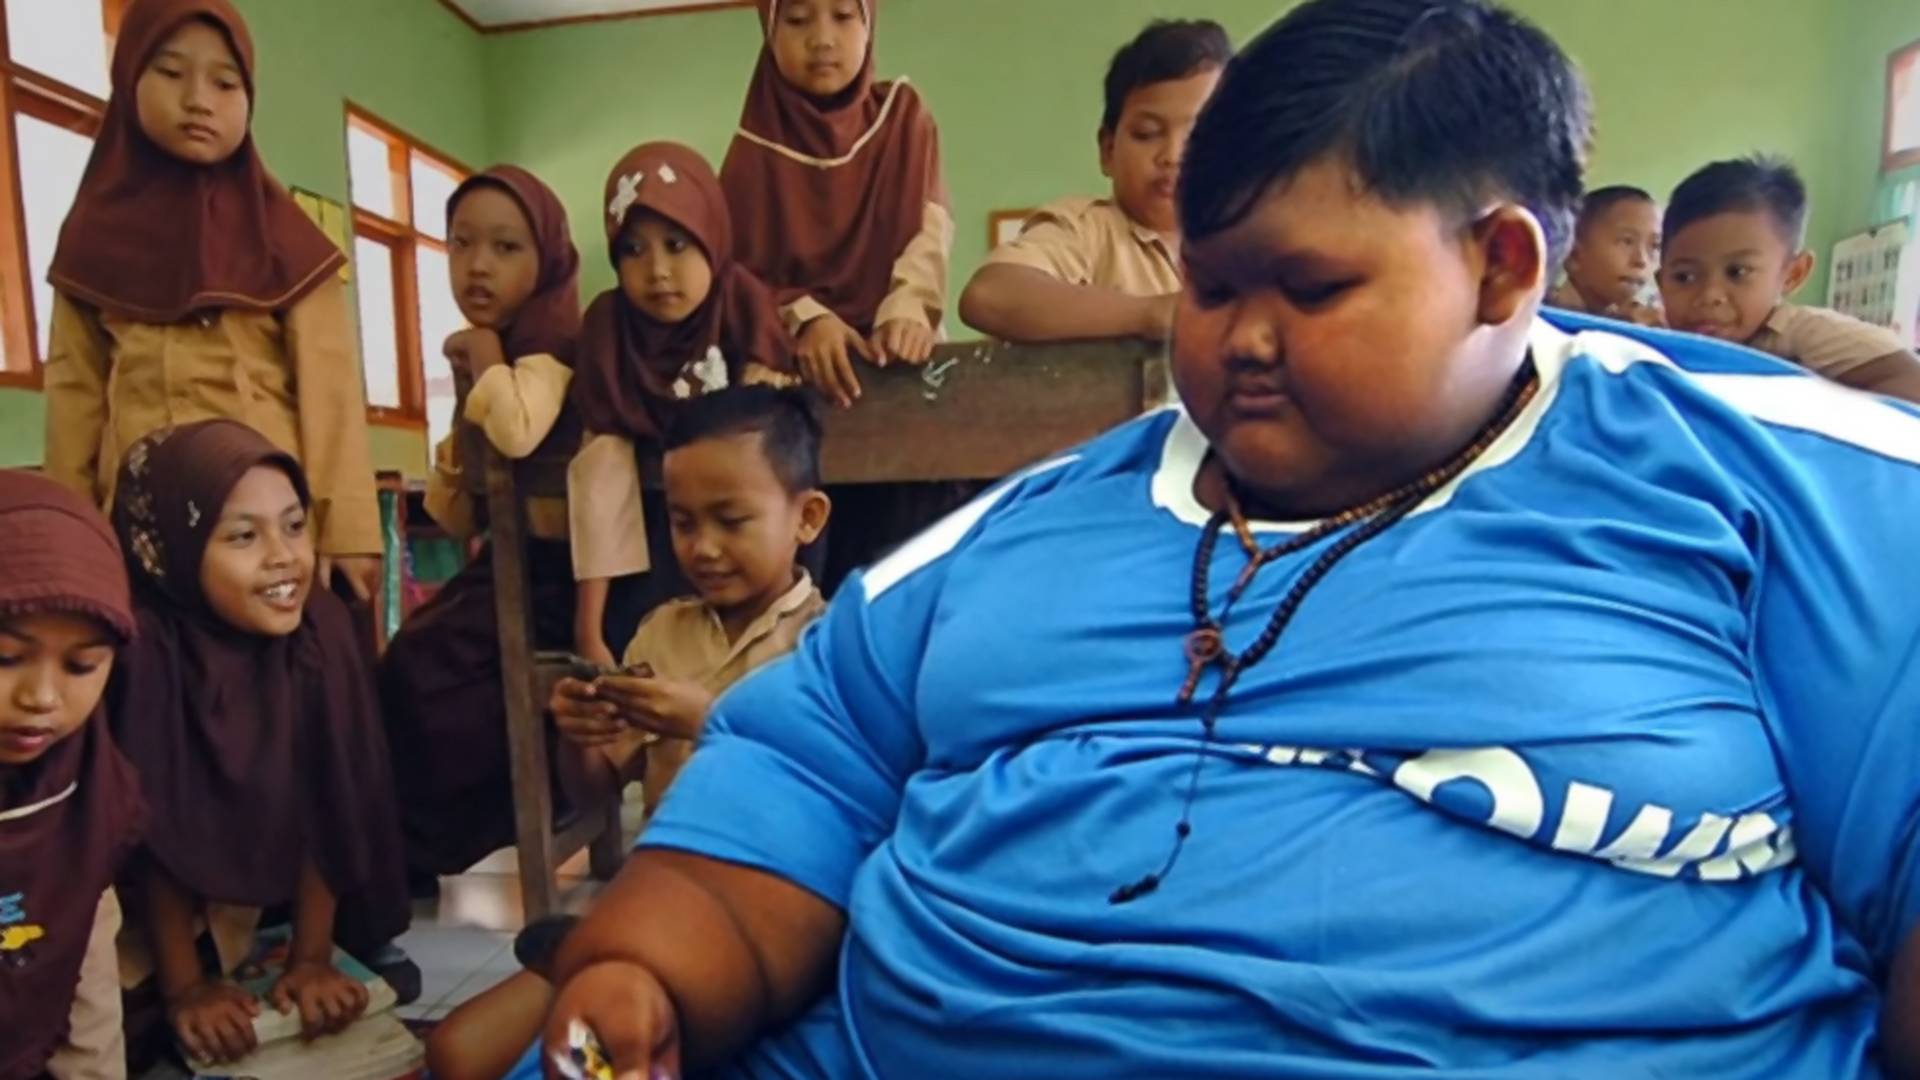 Sa 11 godina je dobio titulu najdebljeg dečaka na svetu - smršao je 108 kilograma i izgleda neprepoznatljivo